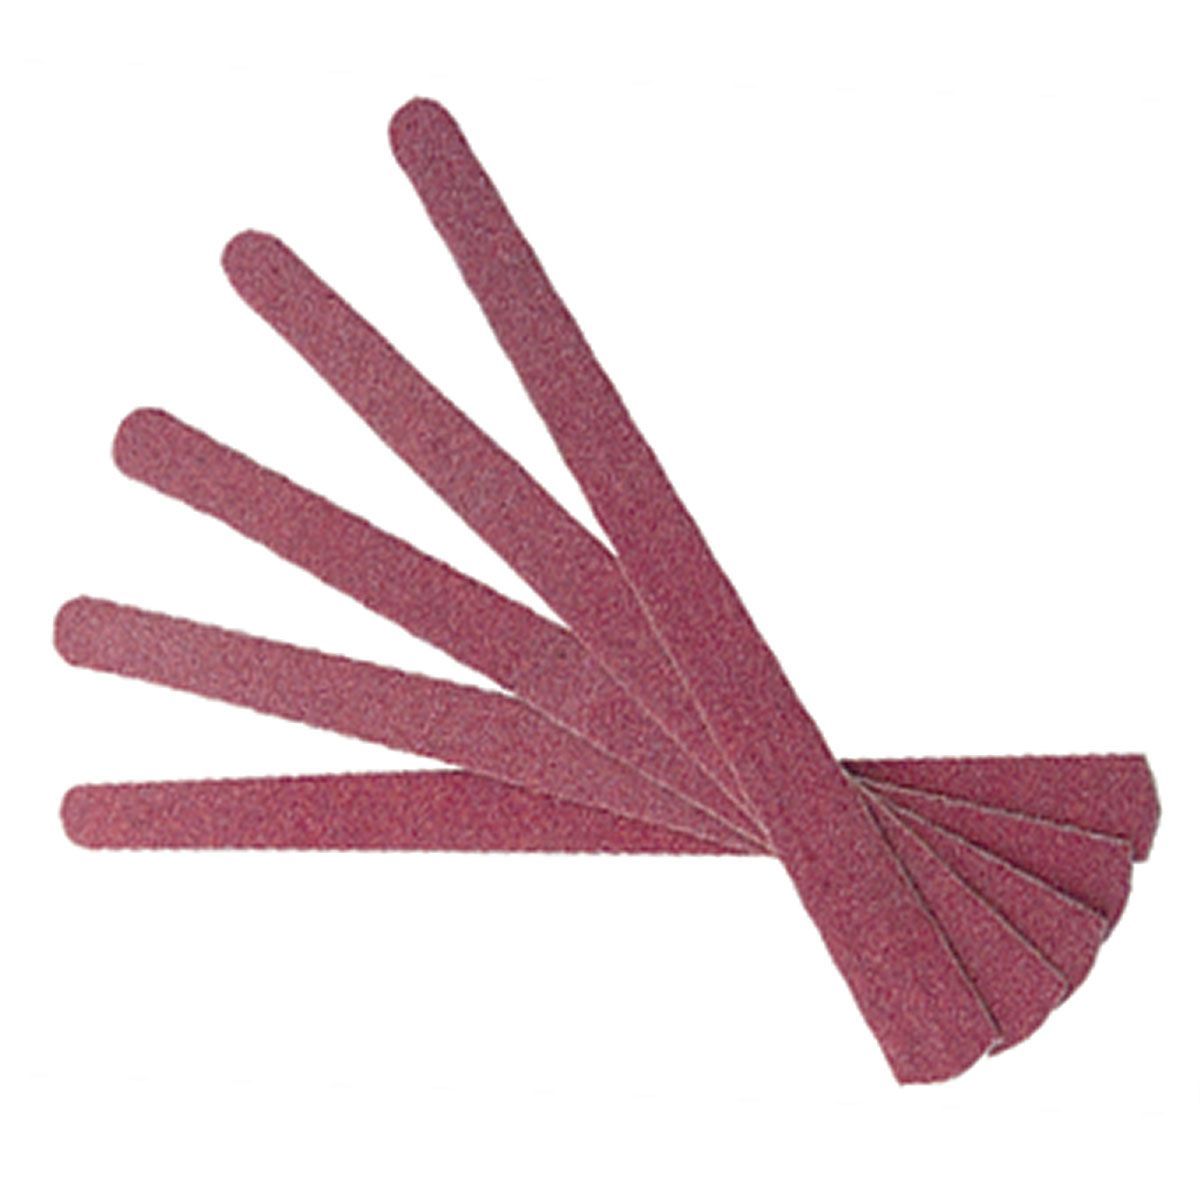 Estipharm lime à Ongles en Verre Colourful 1 unité permet de lisser et  façonner les ongles.